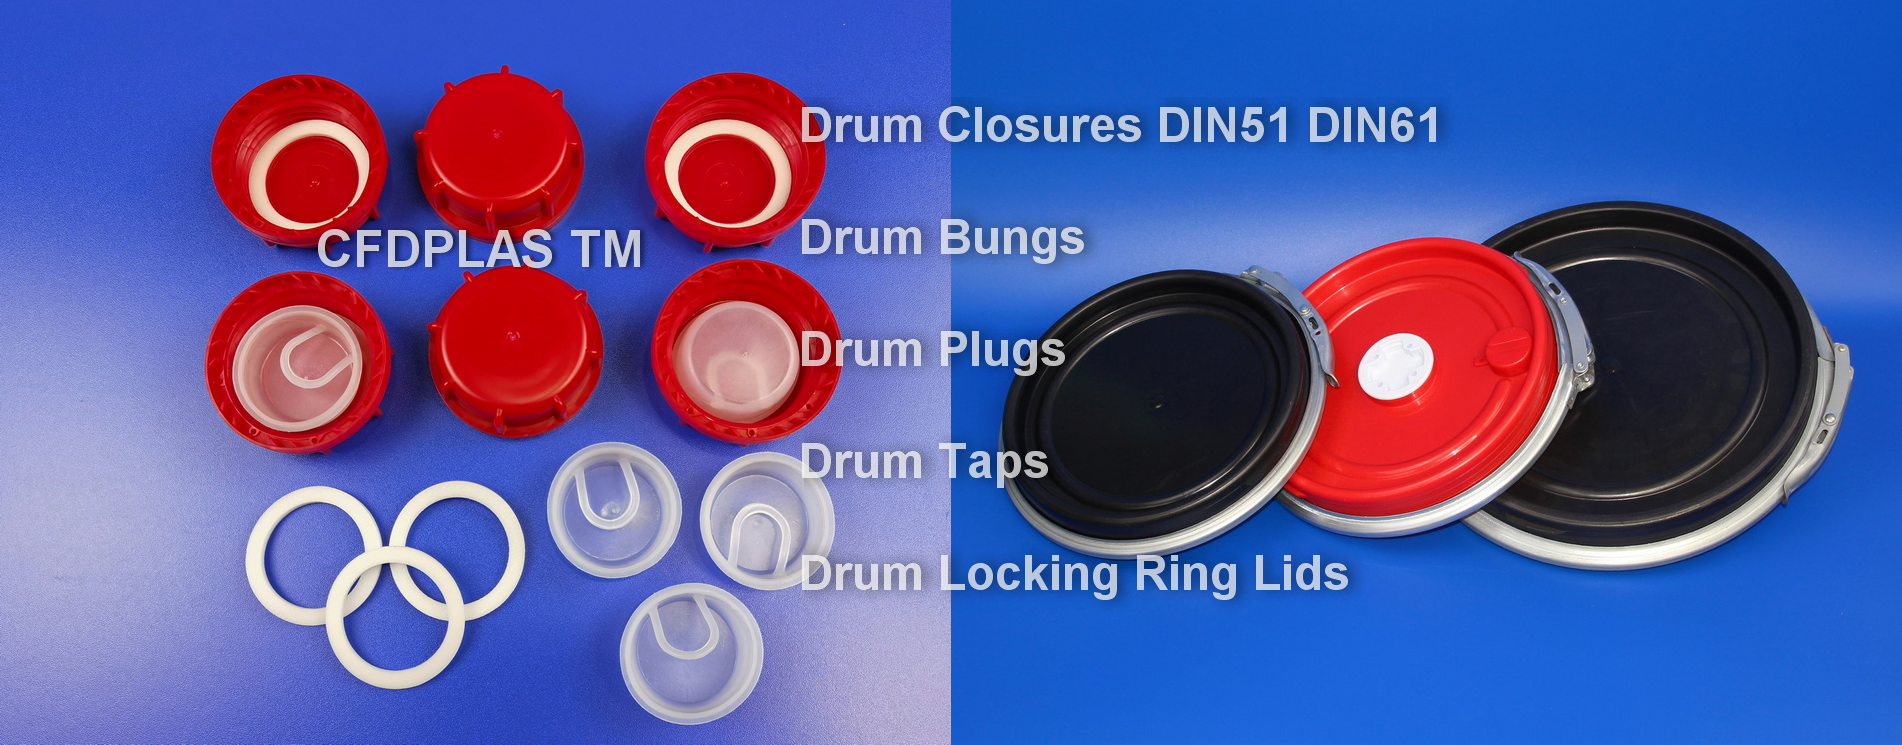 plastic_drum_closures_locking_ring_drum_lids_cfdplas_001-EN